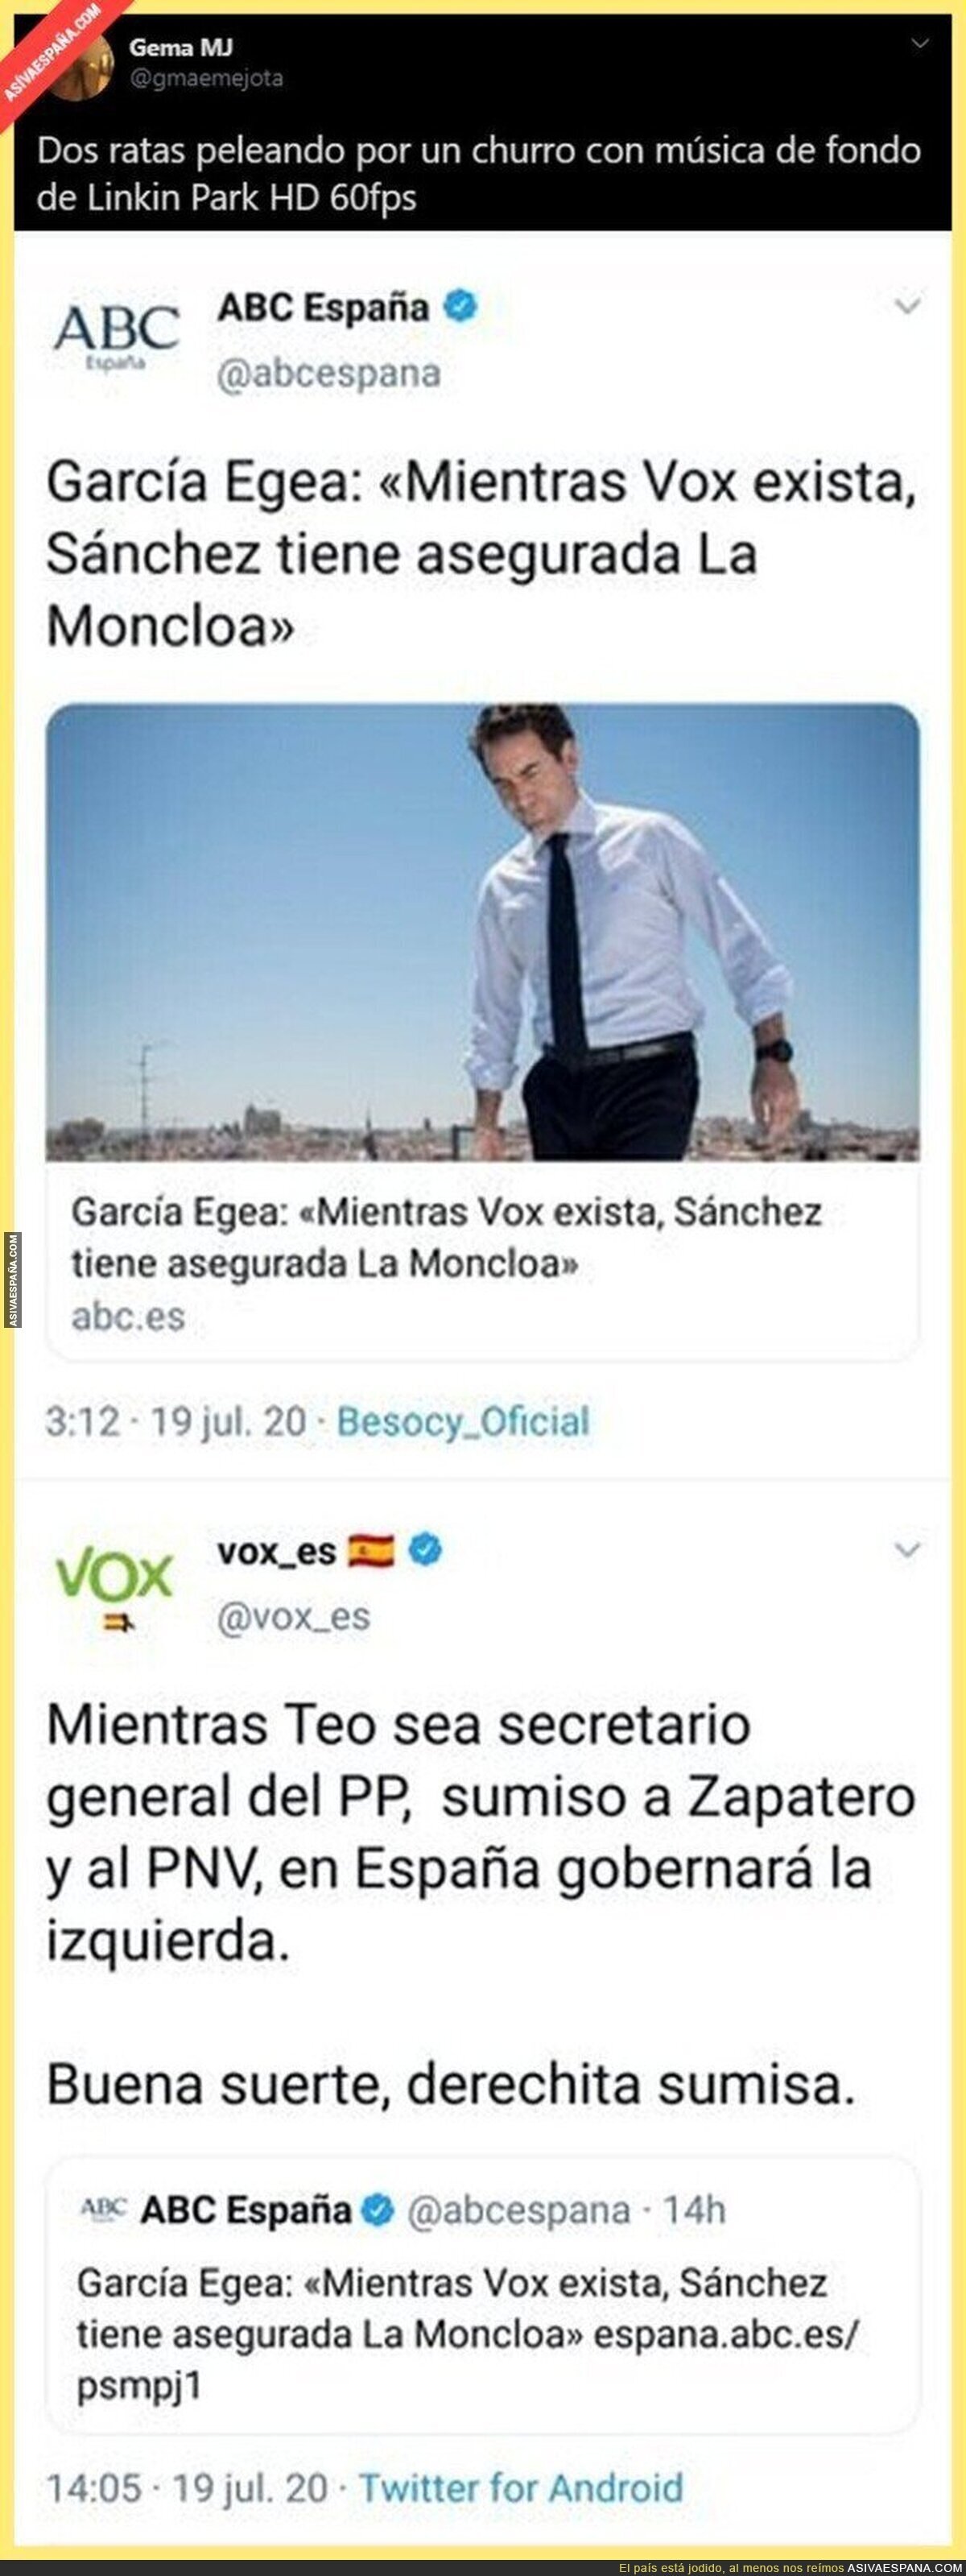 Saltan las chispas en Twitter con esta pelea entre García Egea del PP y VOX